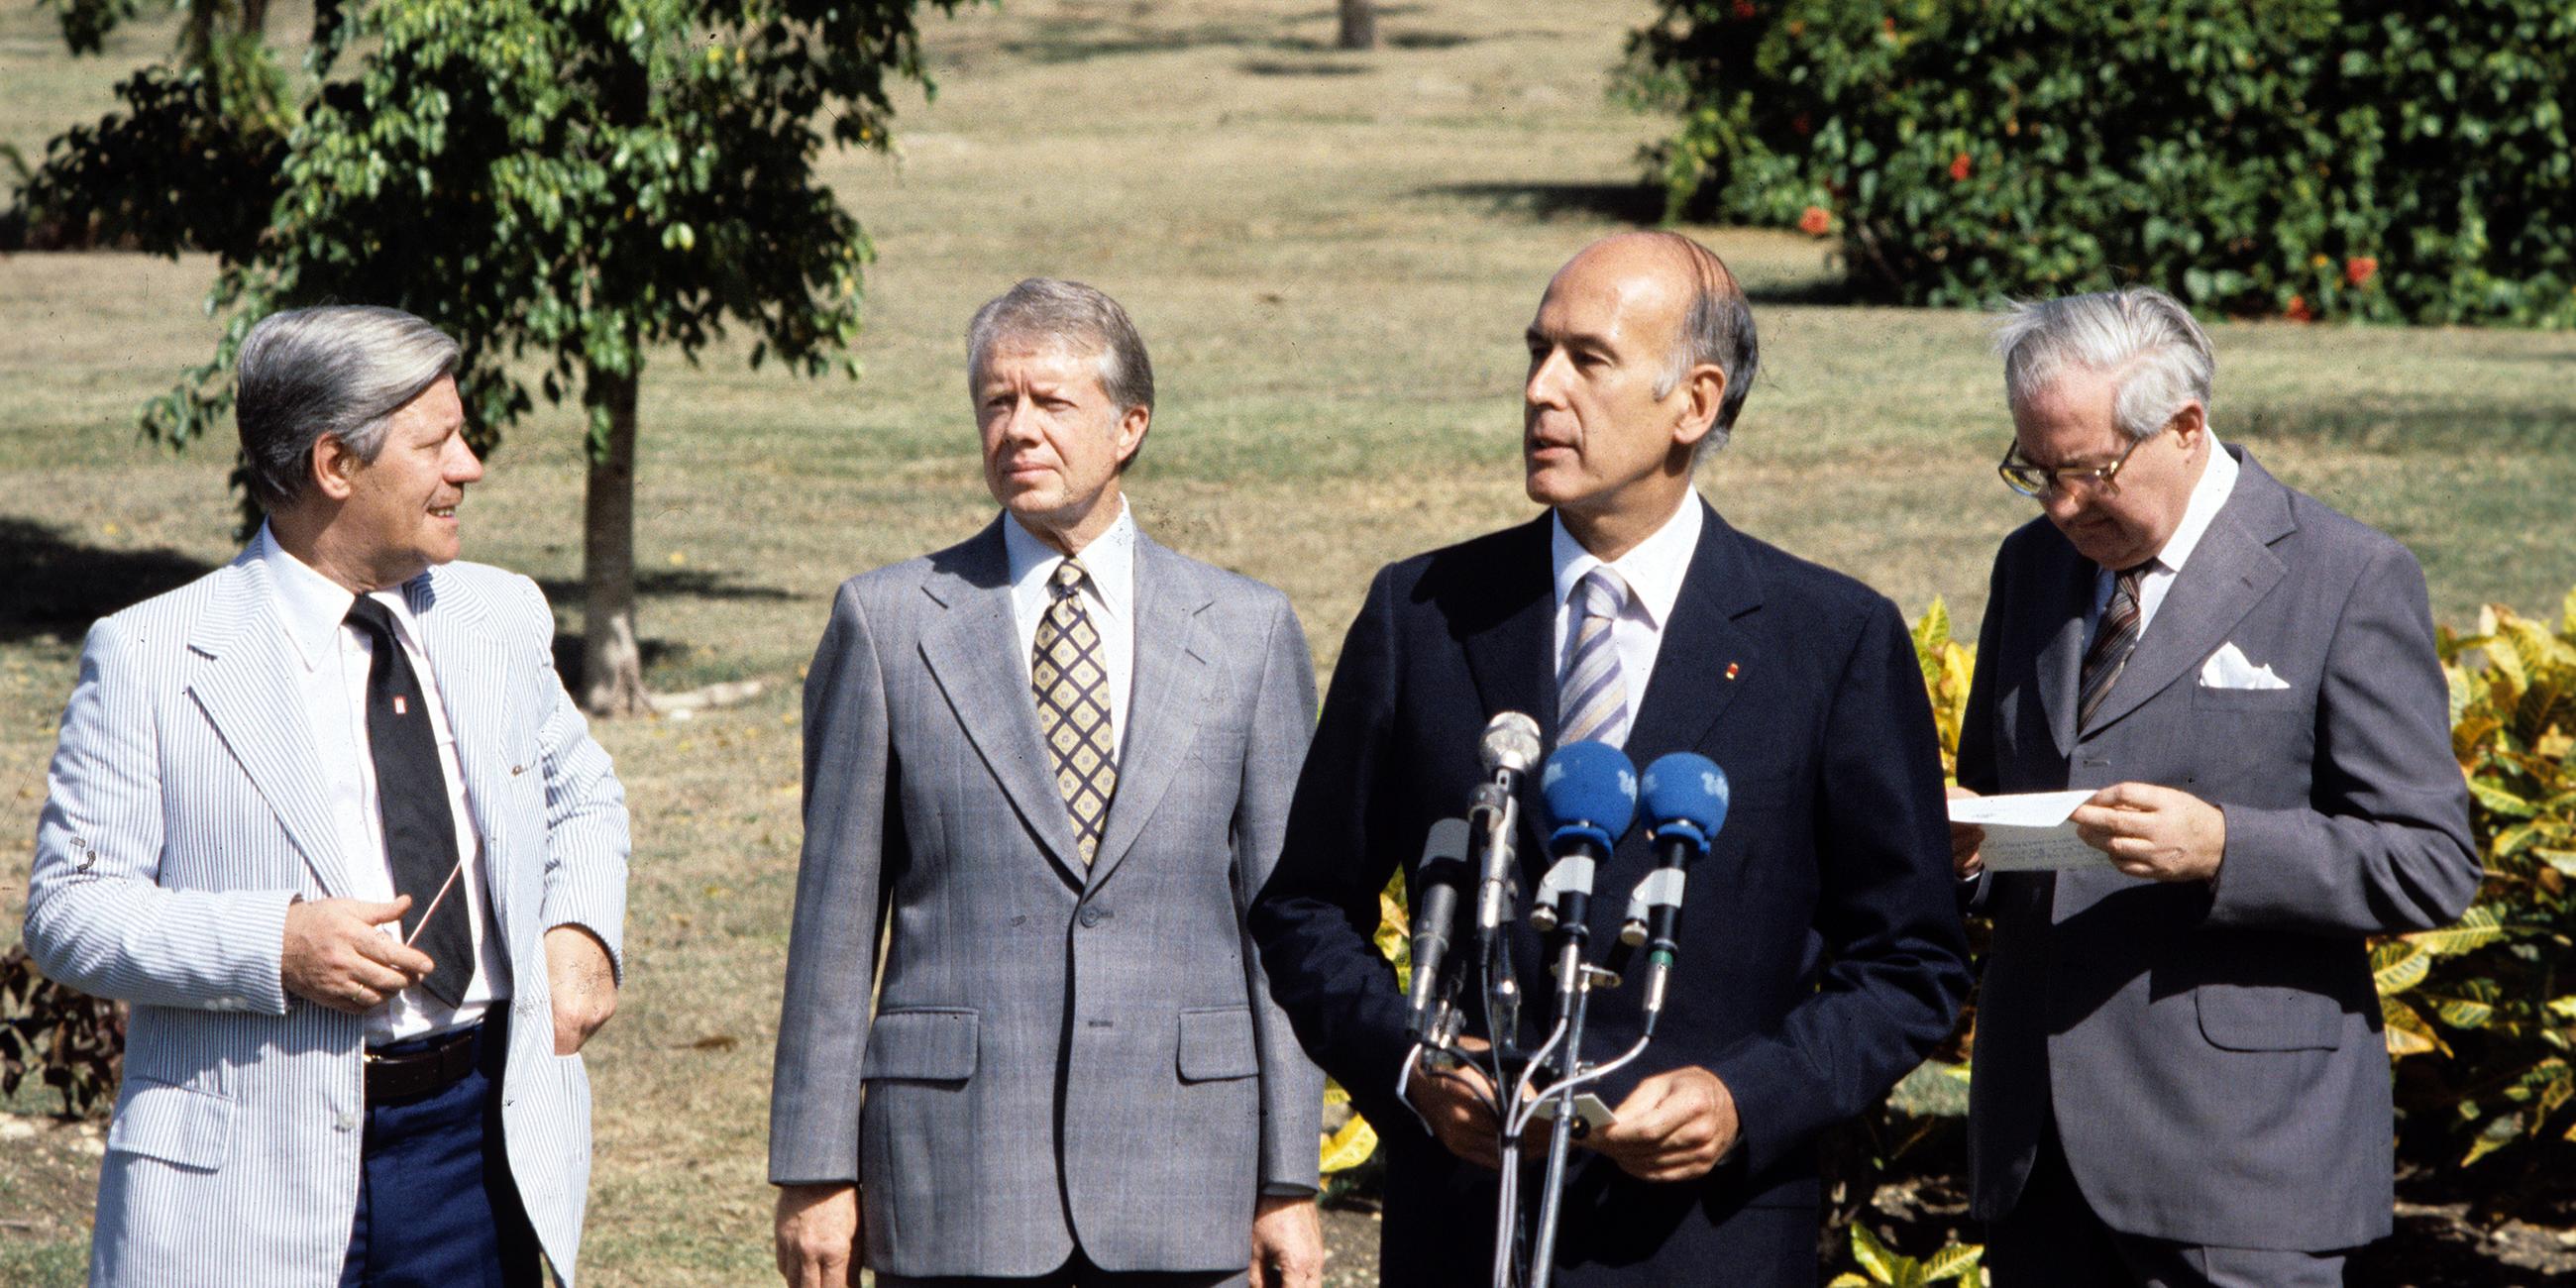 Januar 1979: Gipfelkonferenz in Guadeloupe mit Helmut Schmidt, Jimmy Carter, Valery Giscard D'Estaing und James Callaghan.